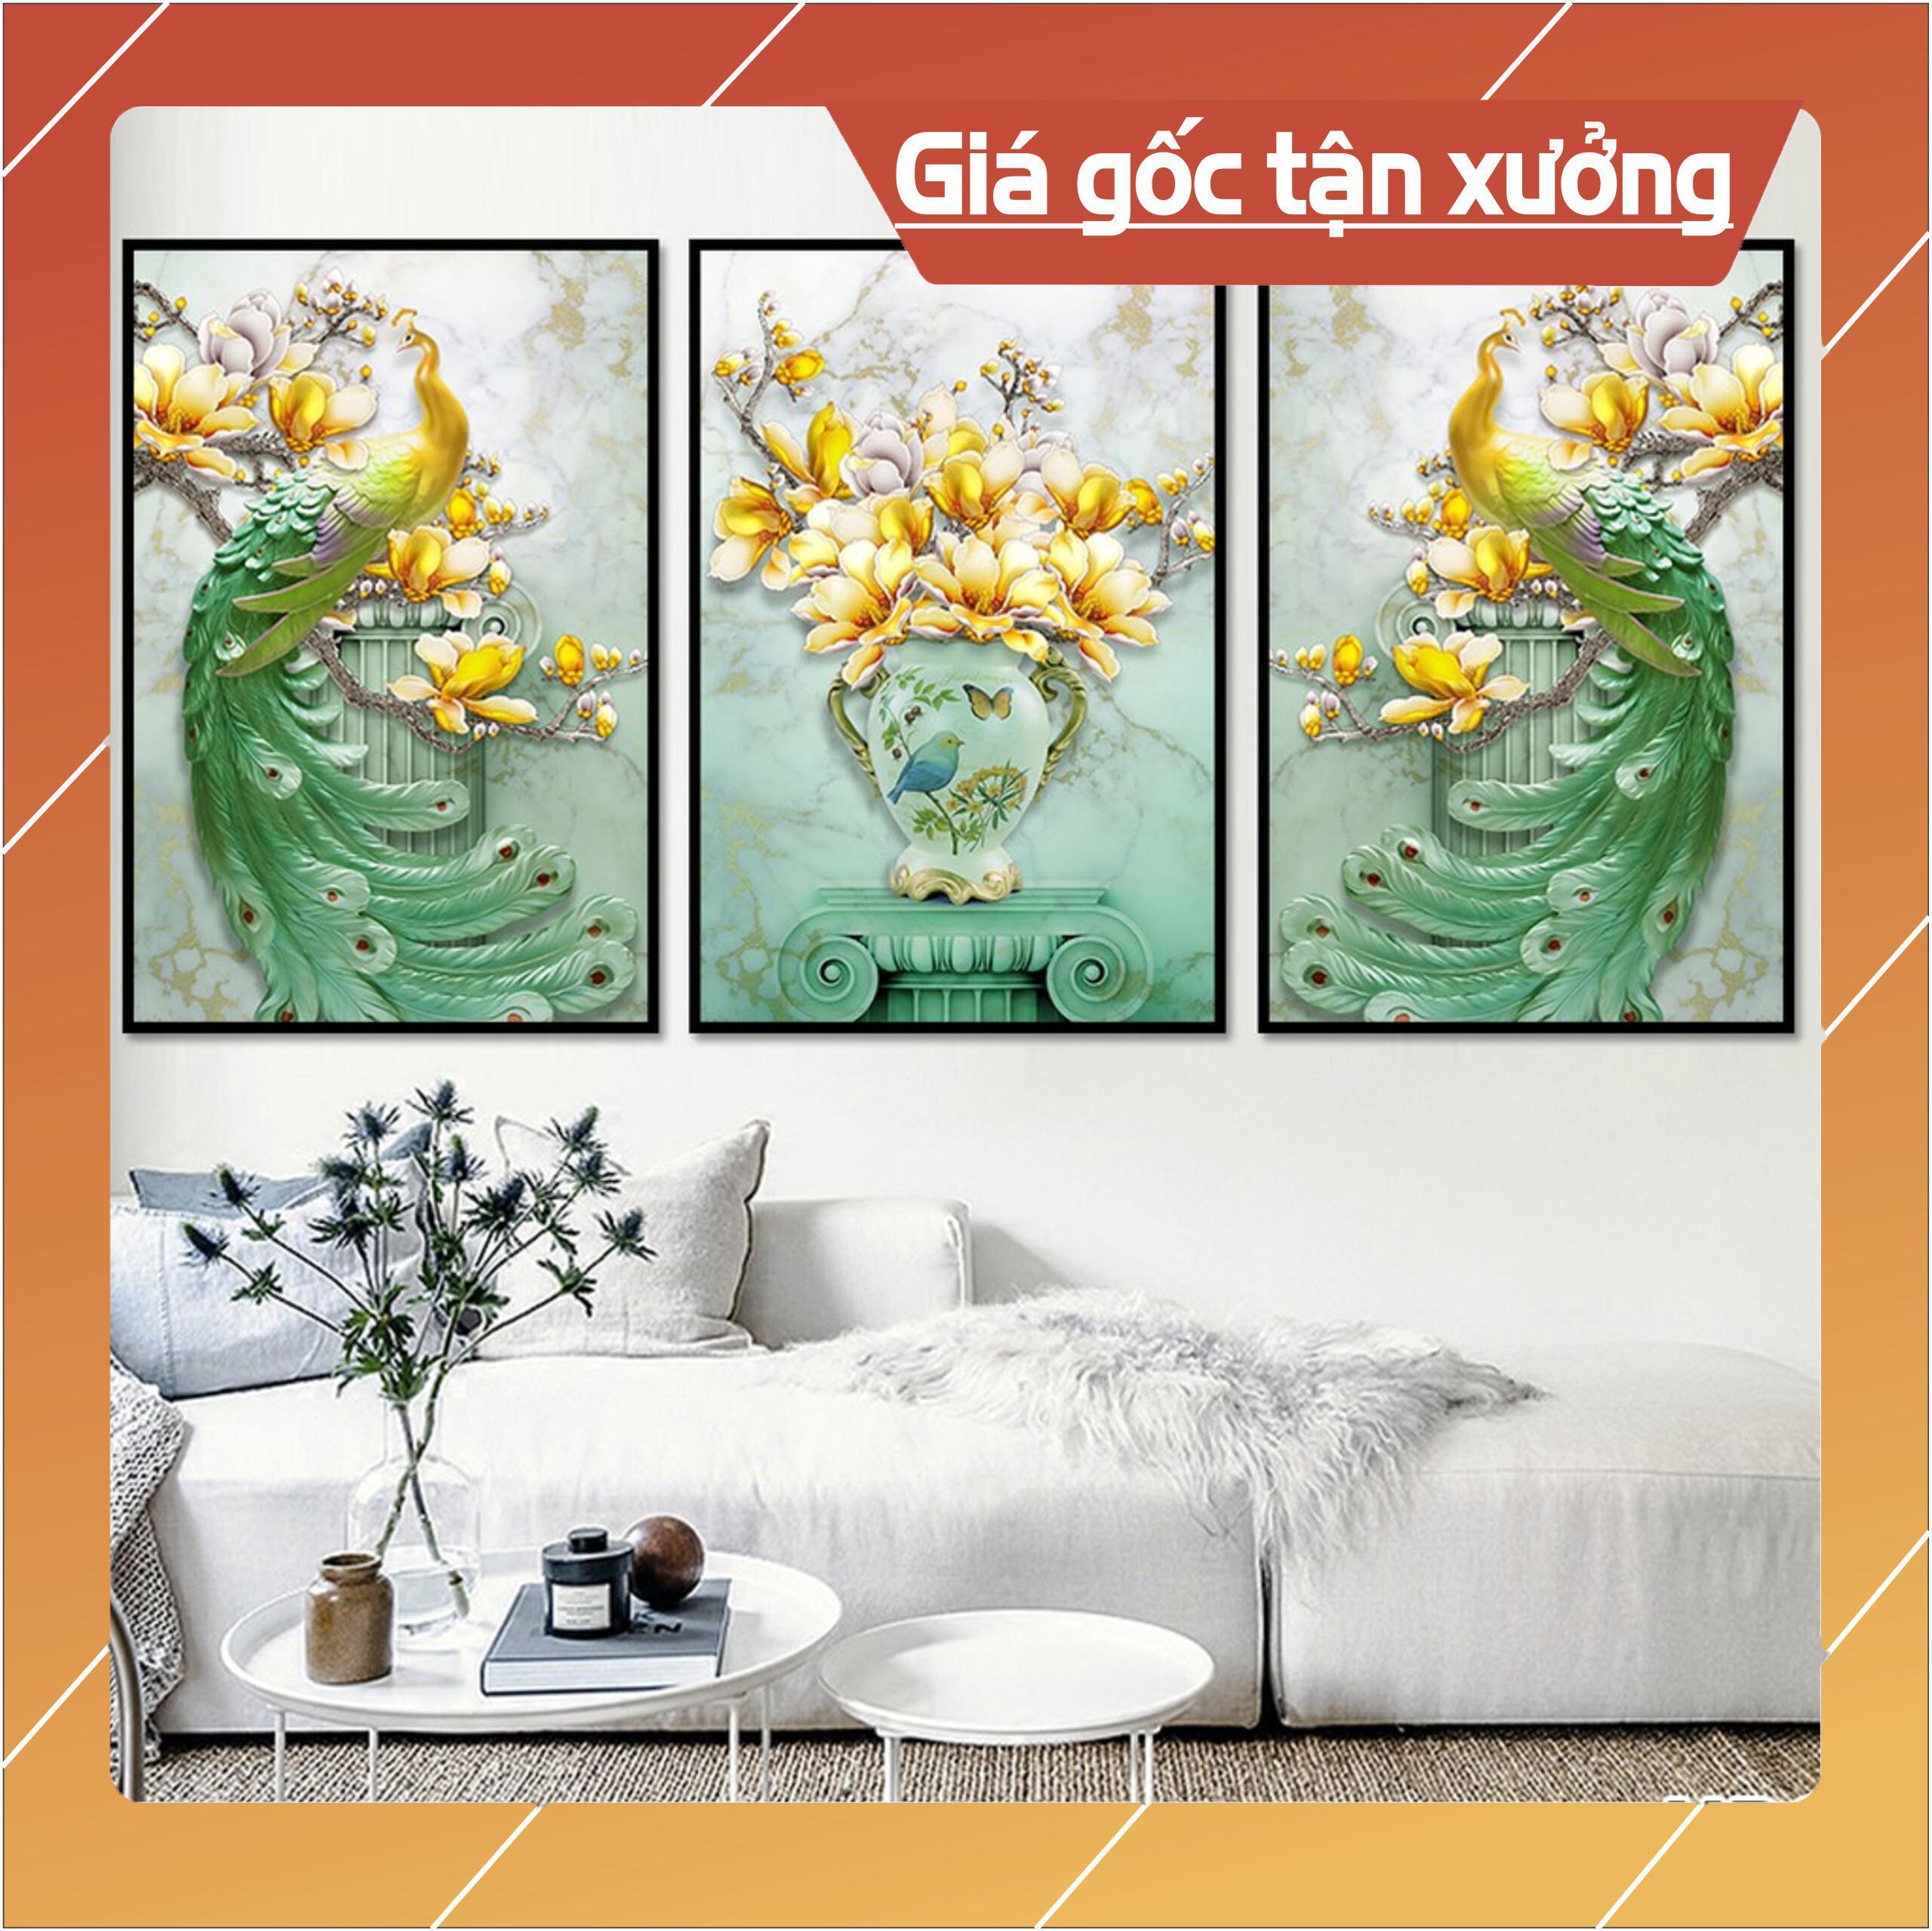 Bộ tranh treo tường phong thủy trang trí nội thất đẹp và giá rẻ nhất thị trường ĐL 22 lá cây nhiệt đới thiên nhiên